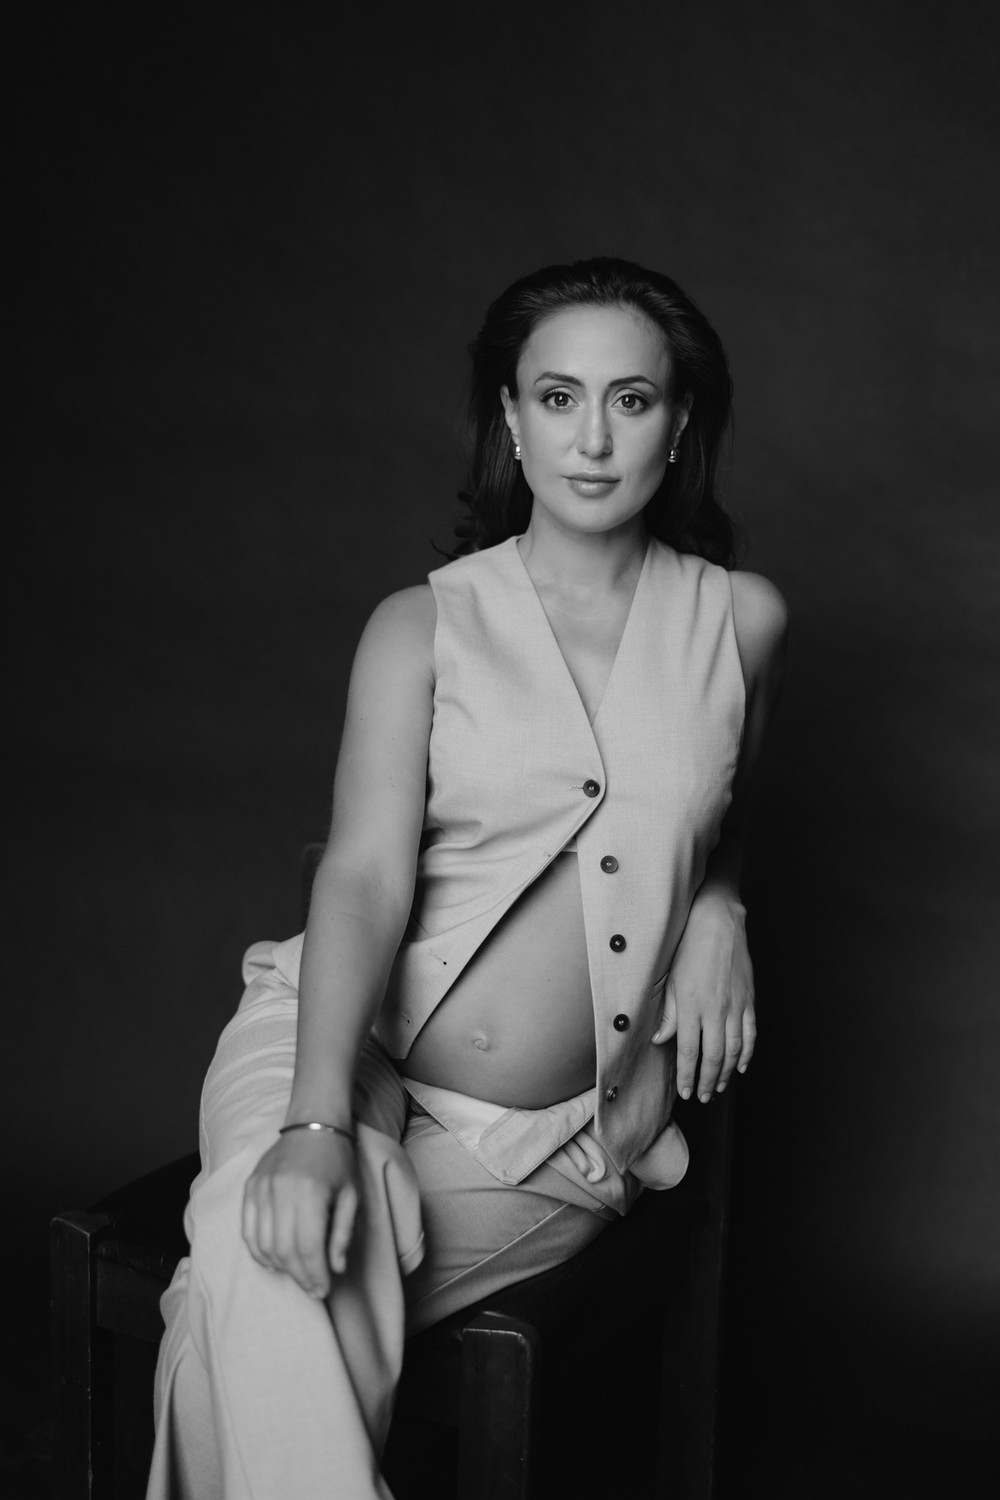 Cap-Ferrat Maternity photoshoot